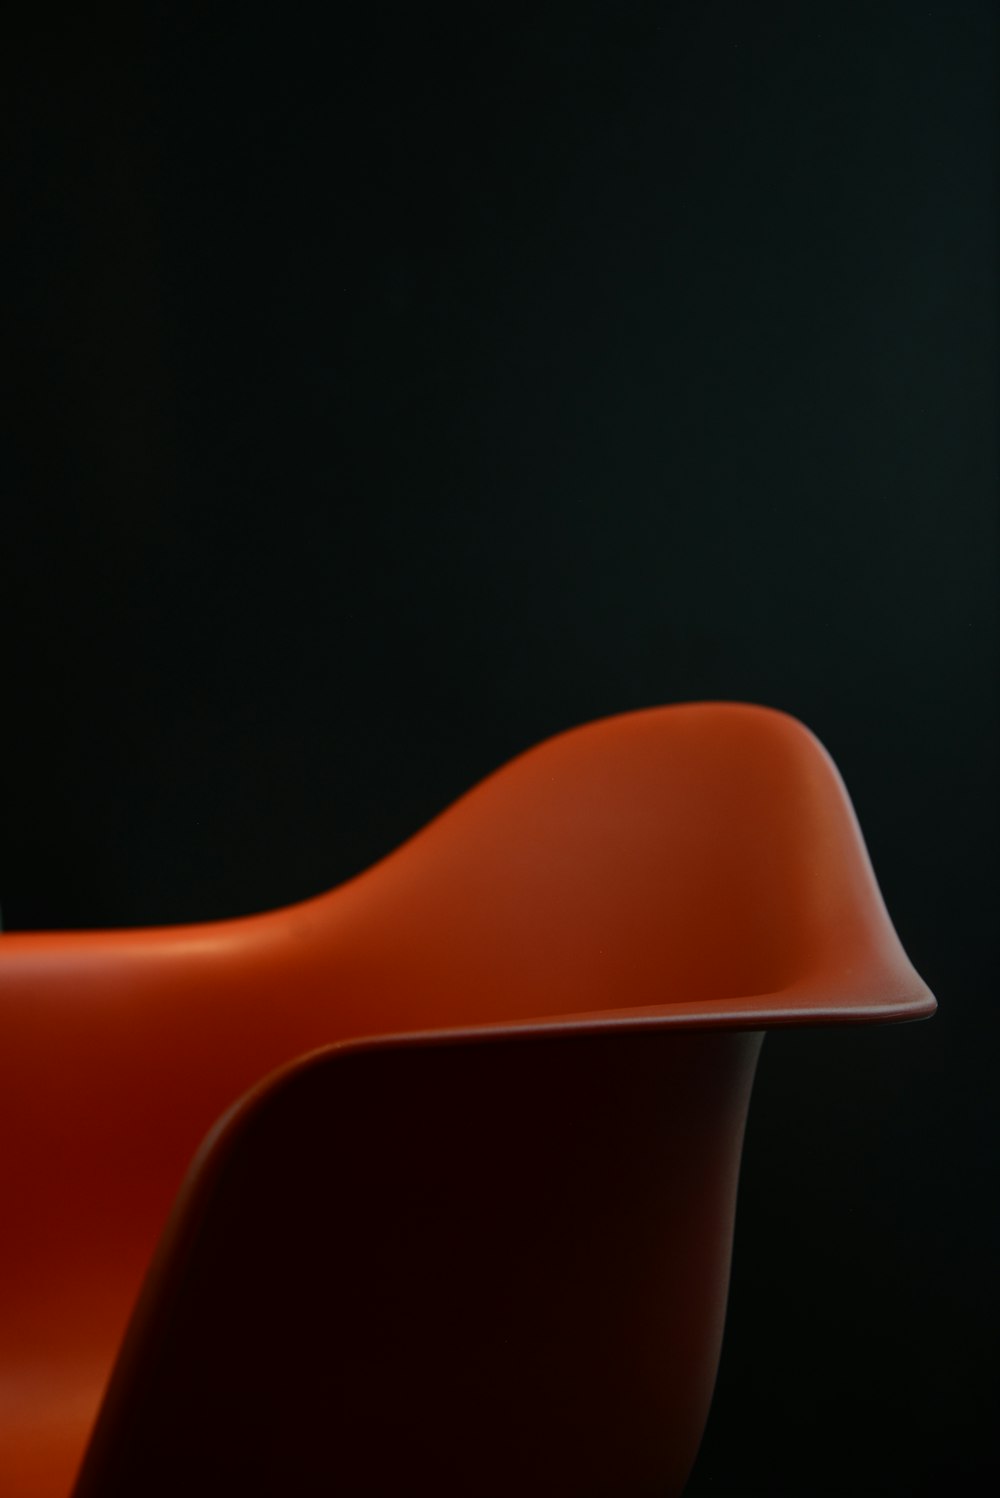 cadeira plástica vermelha no fundo preto